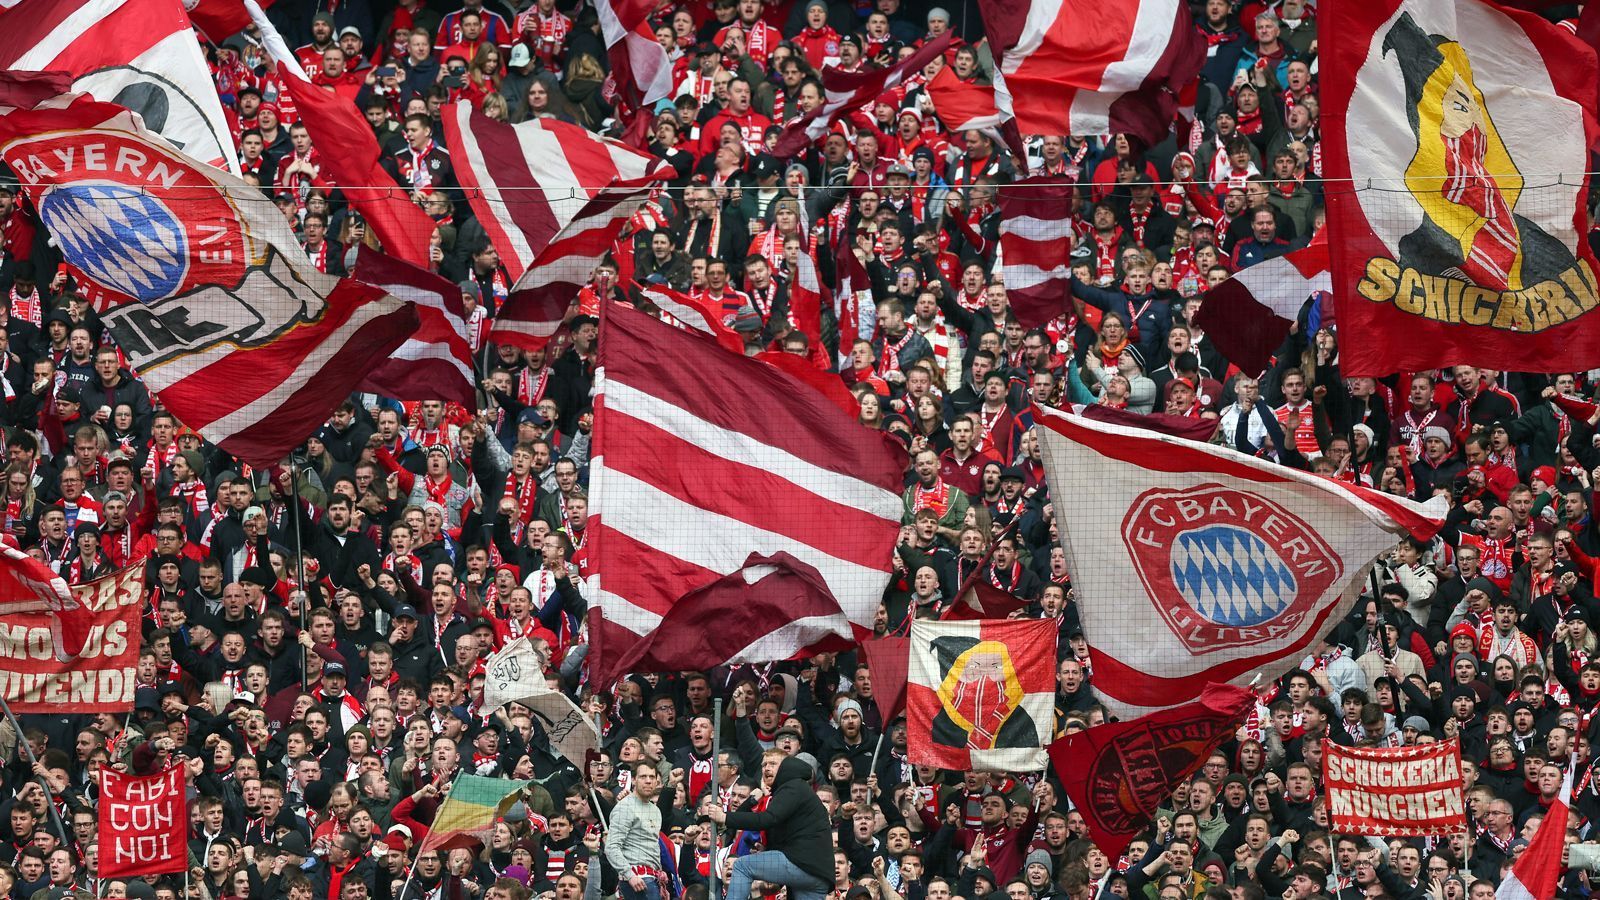 
                <strong>Platz 4 - FC Bayern München</strong><br>
                &#x2022; Durchschnittliche Anzahl an Auswärtsfans: 5.832<br>&#x2022; Höchste Anzahl an Auswärtsfahrern: 15.000 (bei Hertha BSC)<br>&#x2022; Niedrigste Anzahl an Auswärtsfahrern: 2.600 (bei Union Berlin)<br>
              